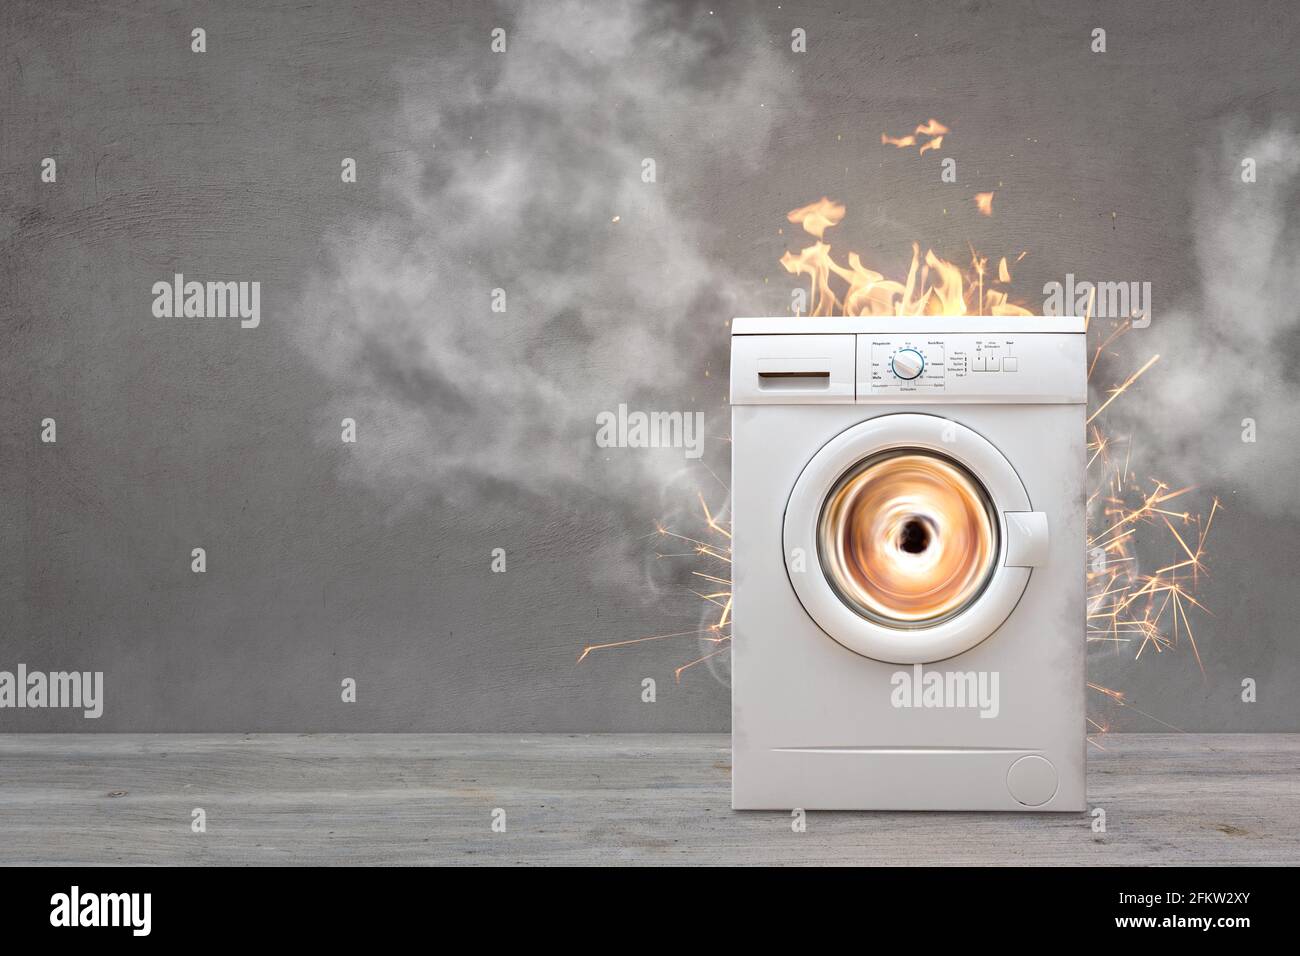 Kaputte Waschmaschine Mit Rauch Und Feuer Stockfoto